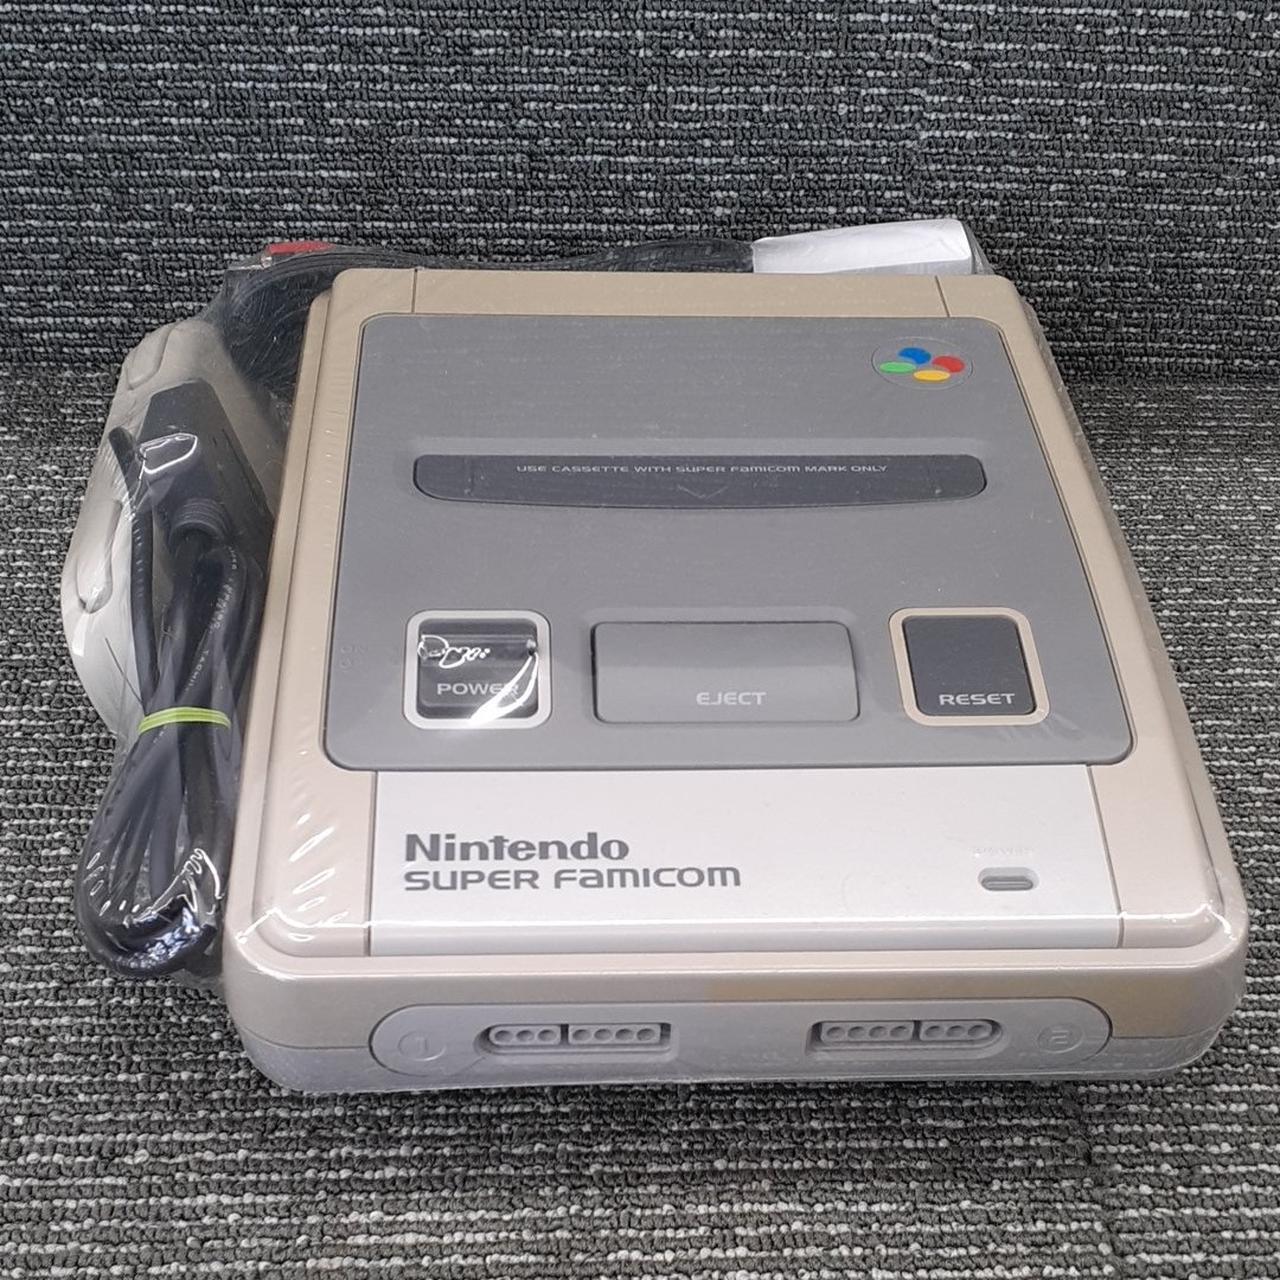 Nintendo Shvc-001 Super Famicom